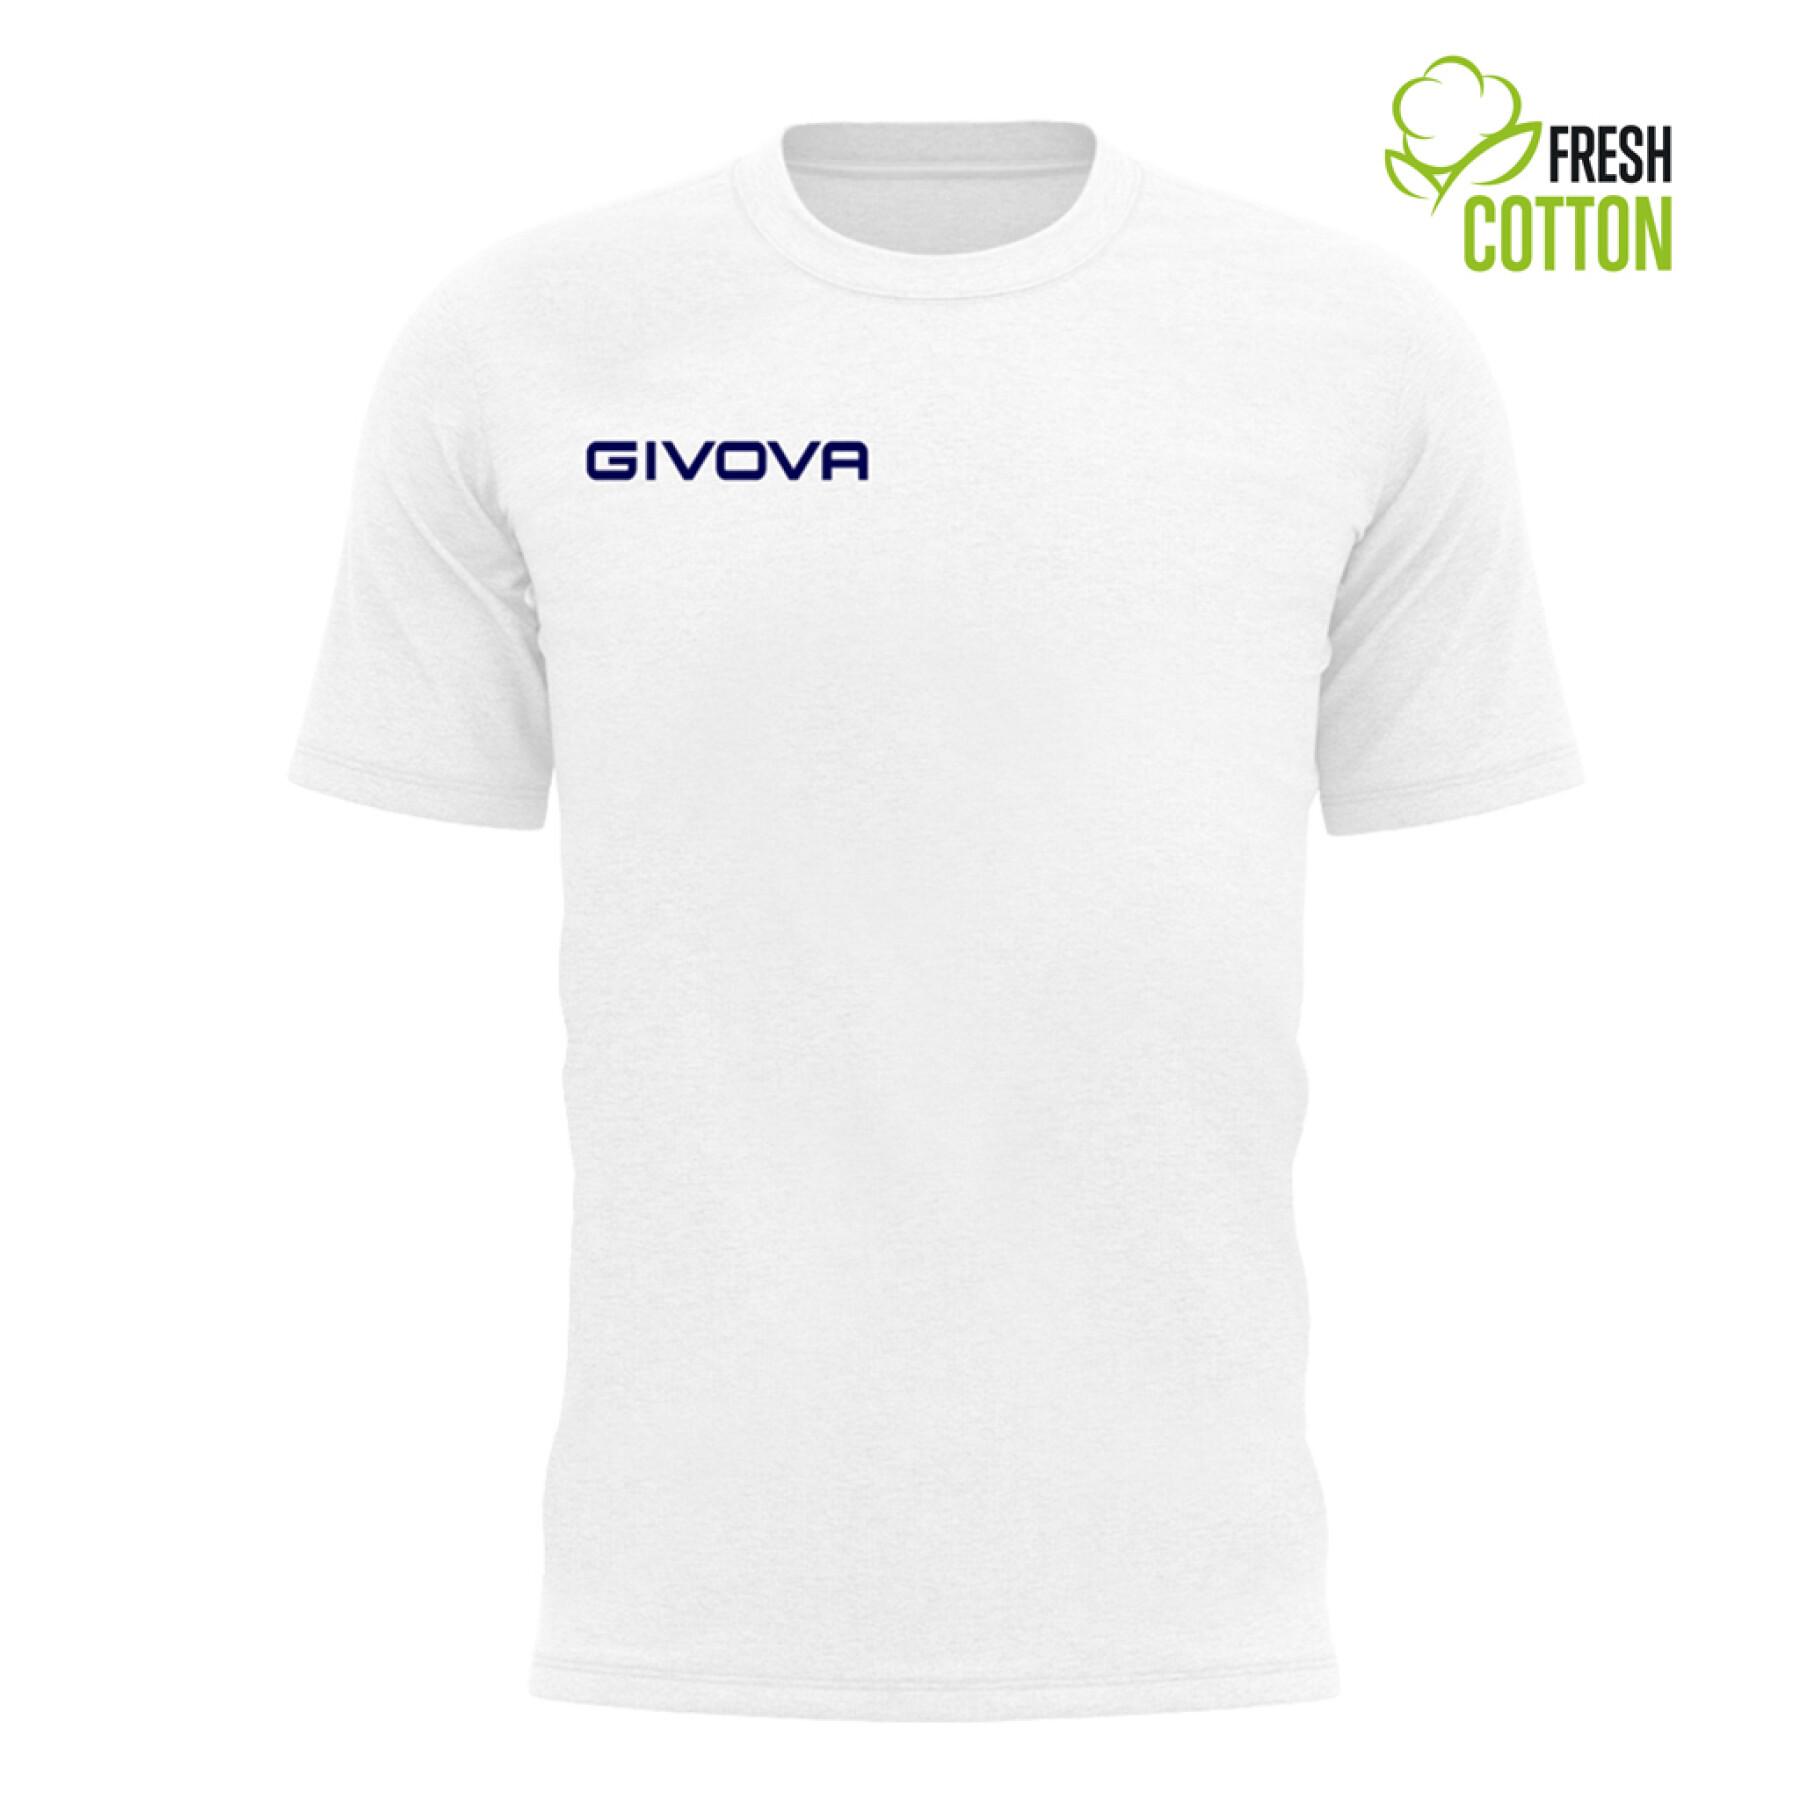 T-shirt criança algodão Givova Fresh